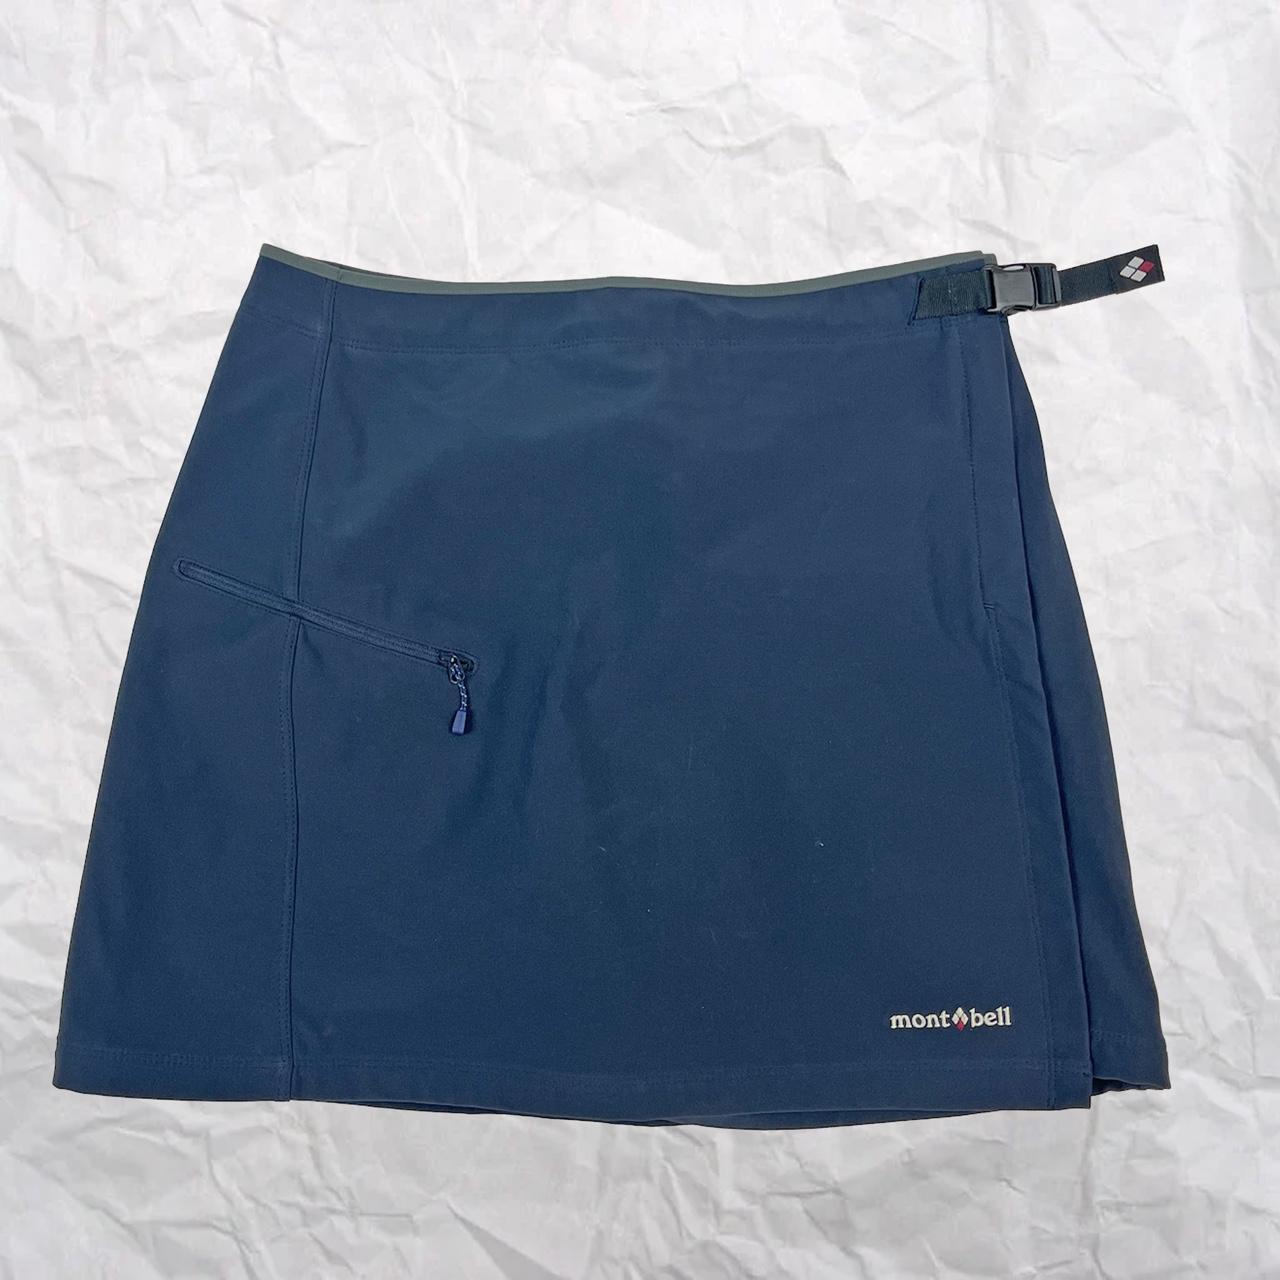 Montbell Technical Skirt Climaplus soft-shell navy... - Depop